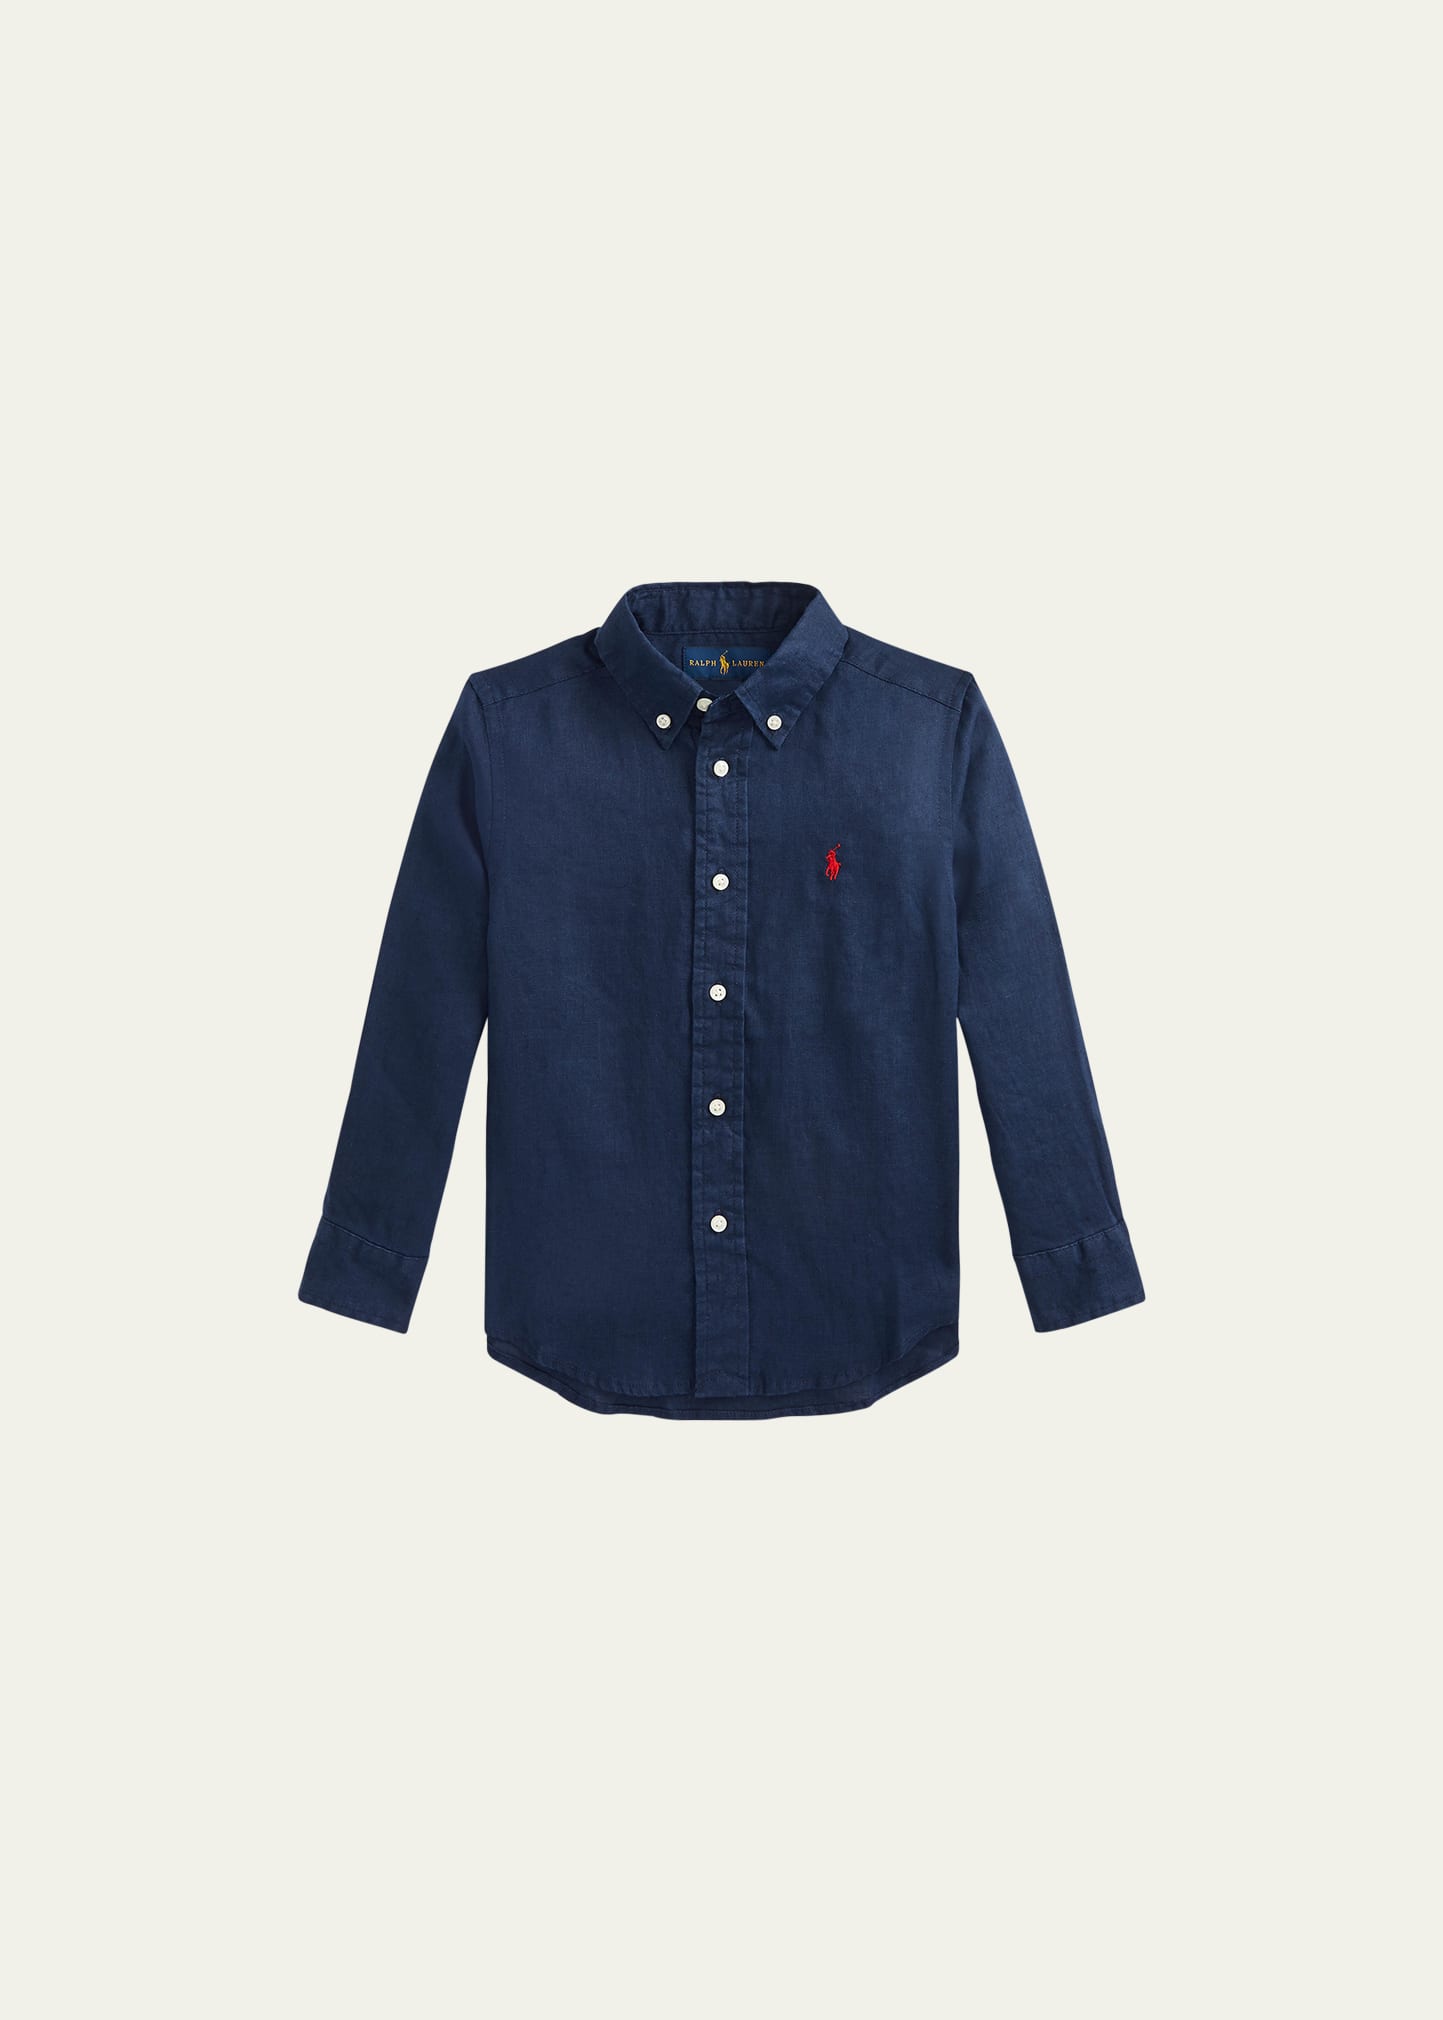 Ralph Lauren Kids' Boy's Linen Long-sleeve Button-front Shirt In Newport Navy